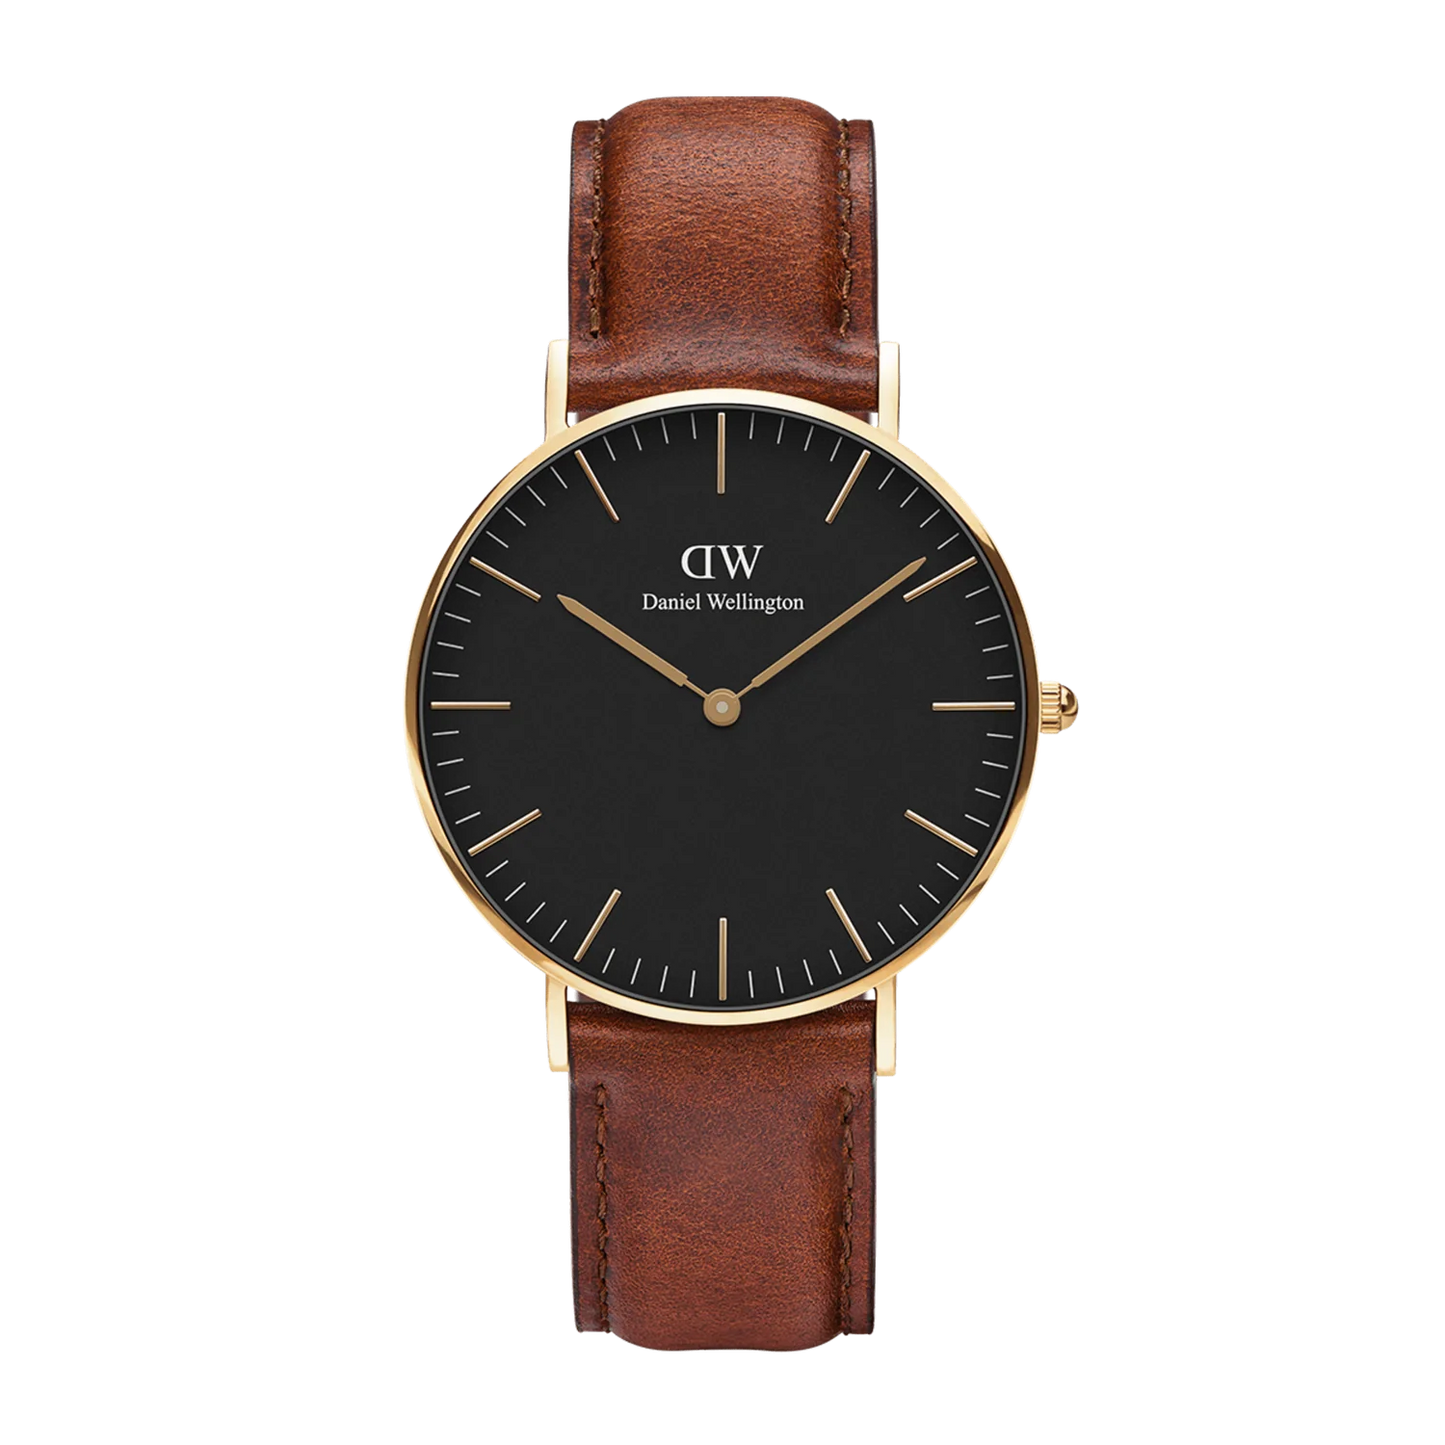 Reloj clásico St Mawes para hombre DW00100545